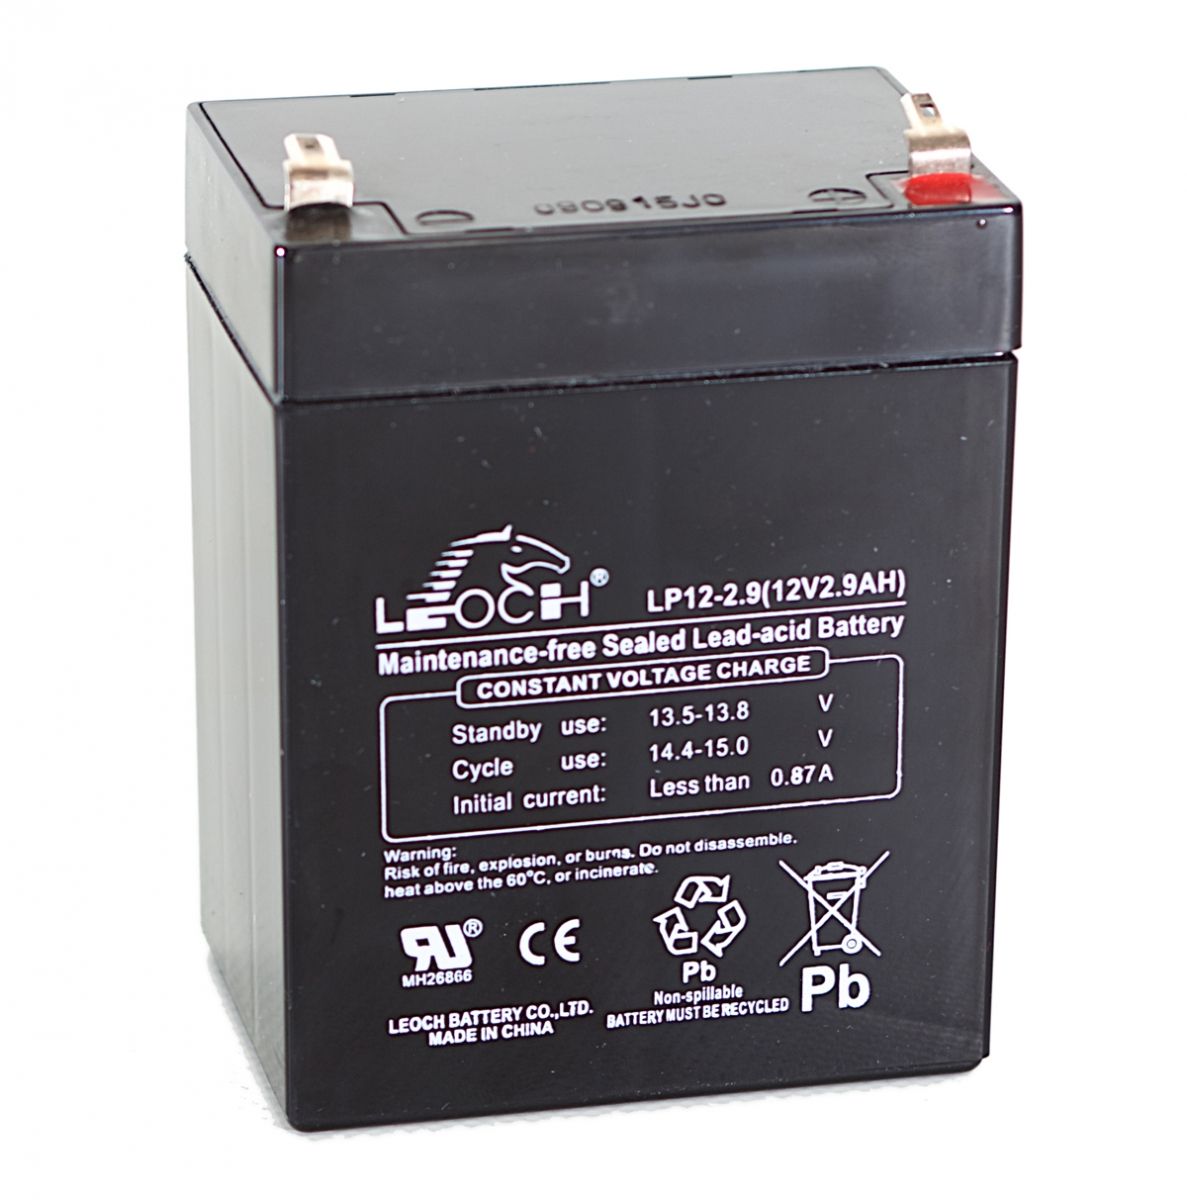 Voltage 12v. Leoch lp12-2.9 12v2.9Ah. Leoch аккумулятор Leoch DJW 12-9. Leoch lp12-9.0. Аккумулятор lp12-1.2(12v1.2Ah).